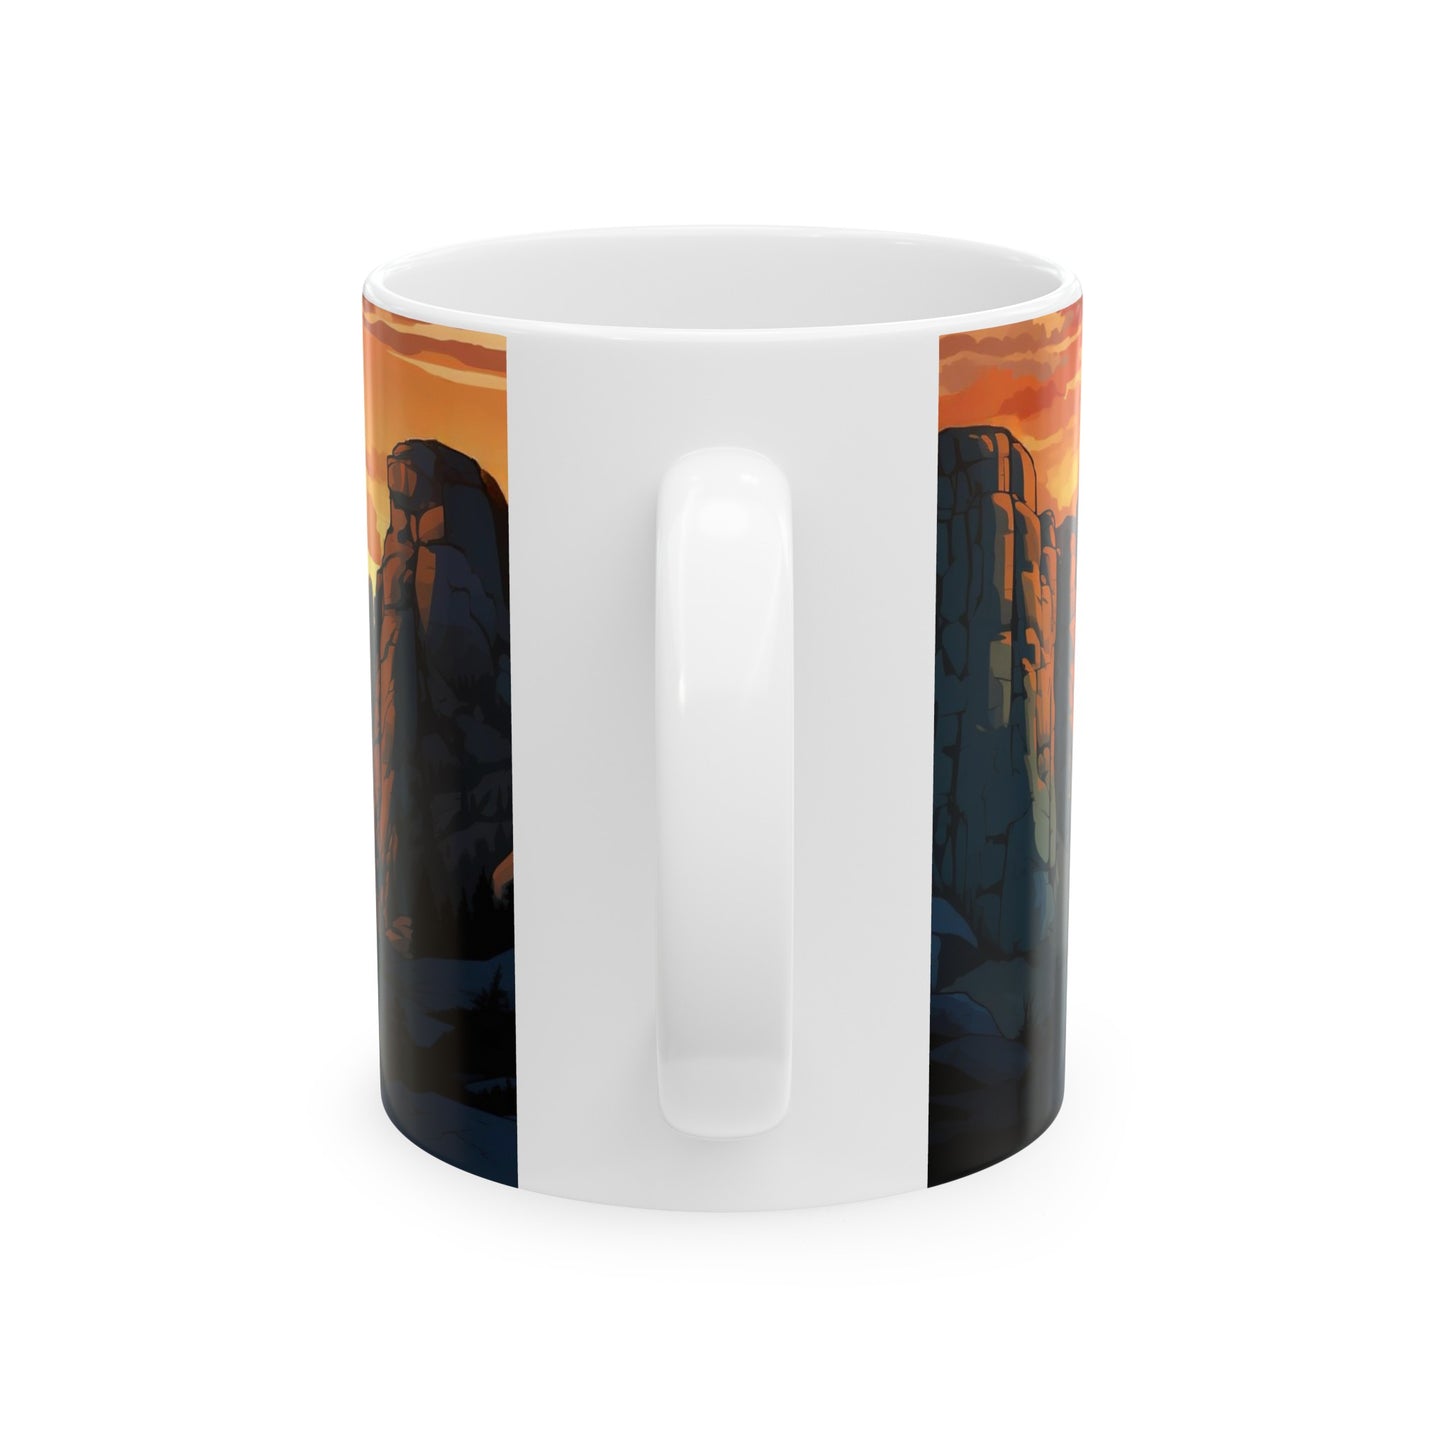 Pinnacles National Park Mug | White Ceramic Mug (11oz, 15oz)